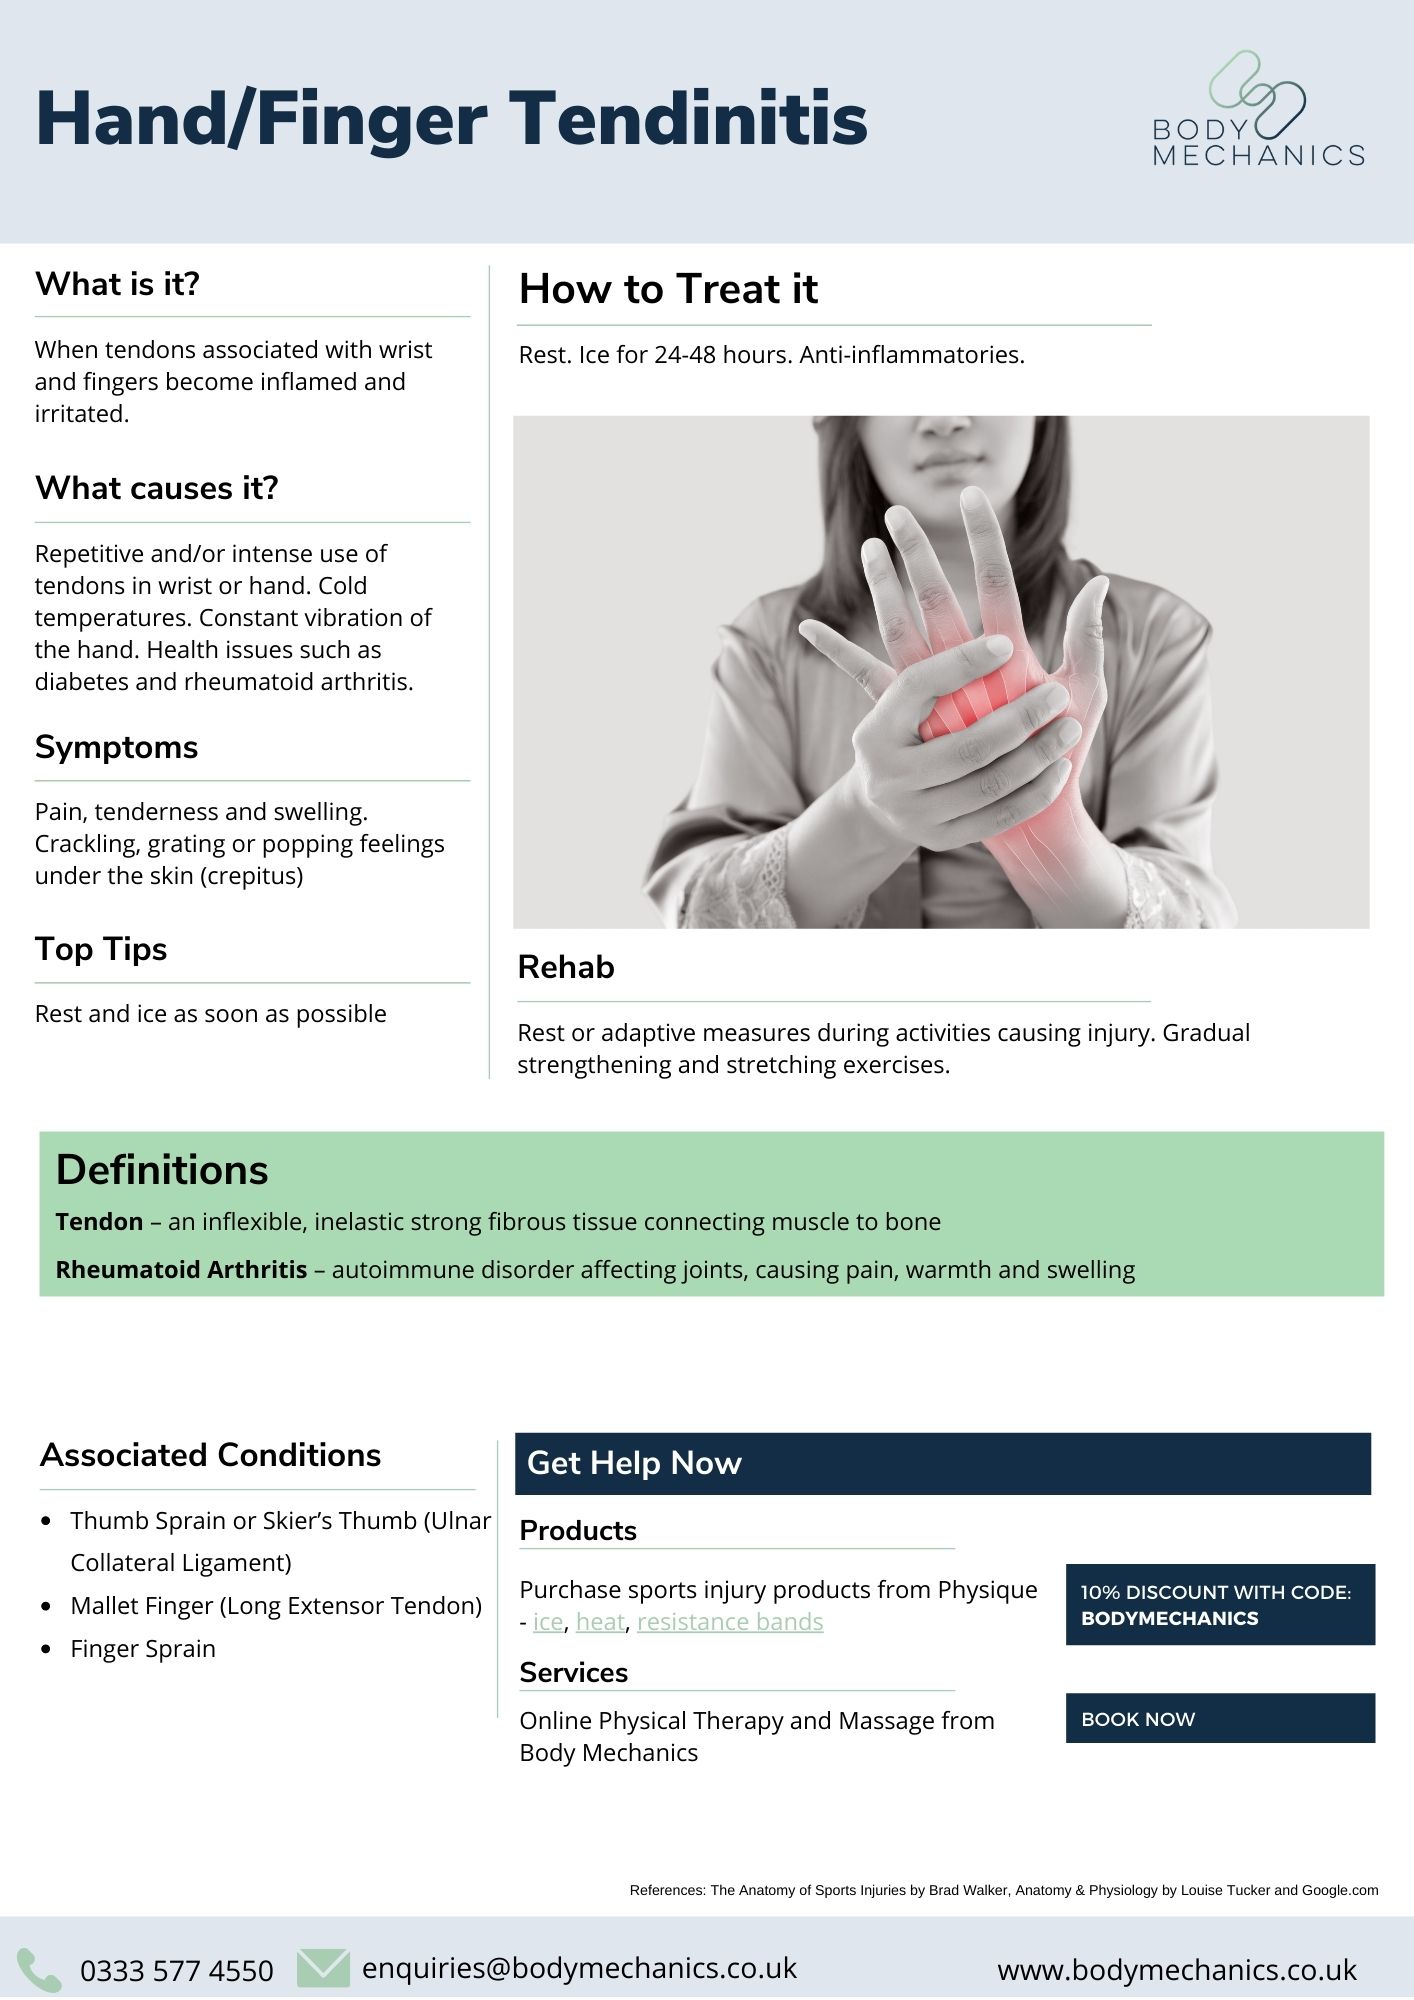 Hand/Finger Tendinitis Infosheet